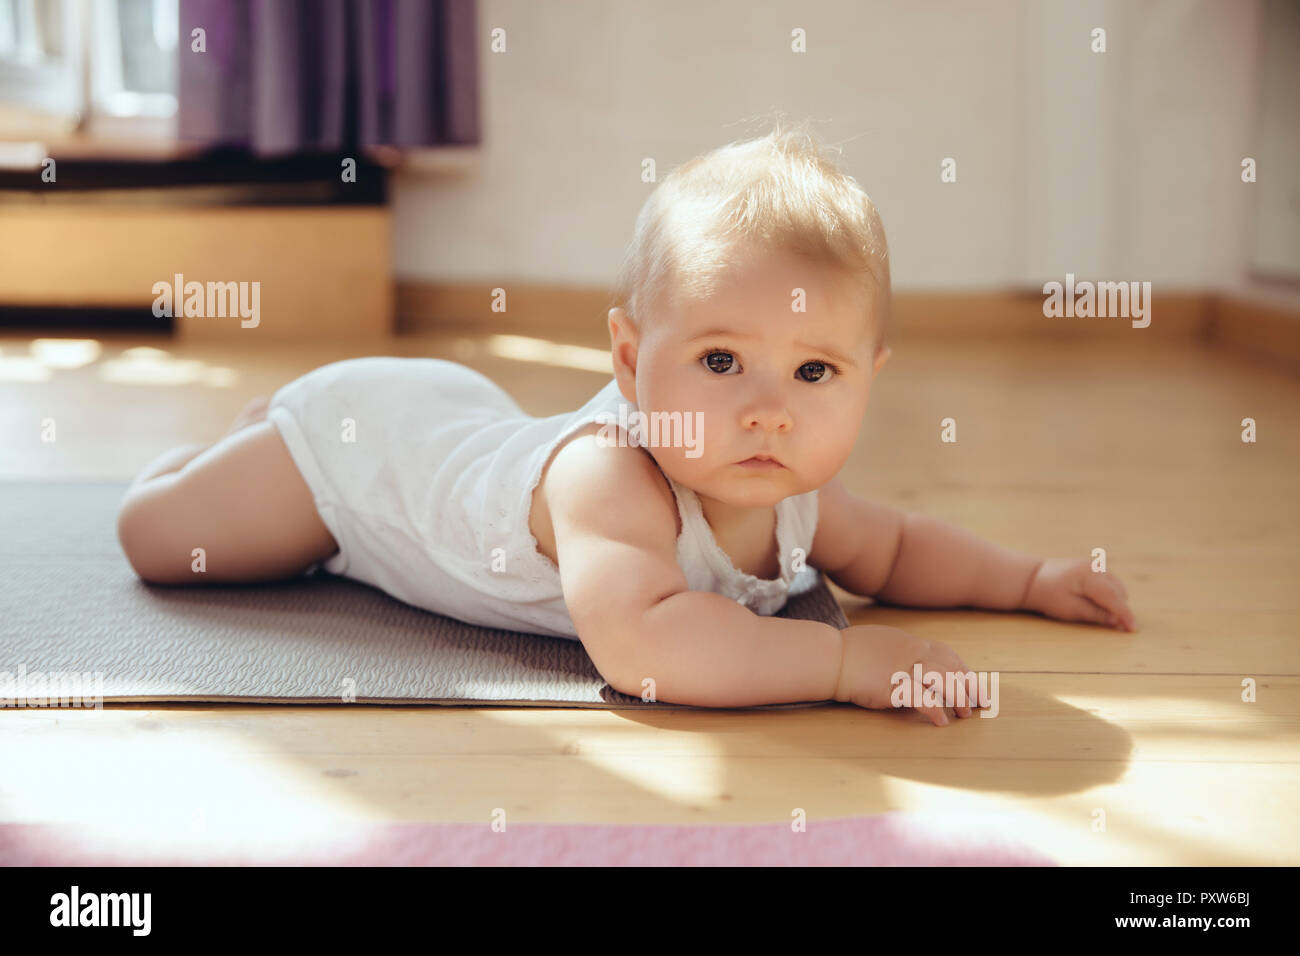 Le portrait de bébé couché sur un tapis de yoga Banque D'Images